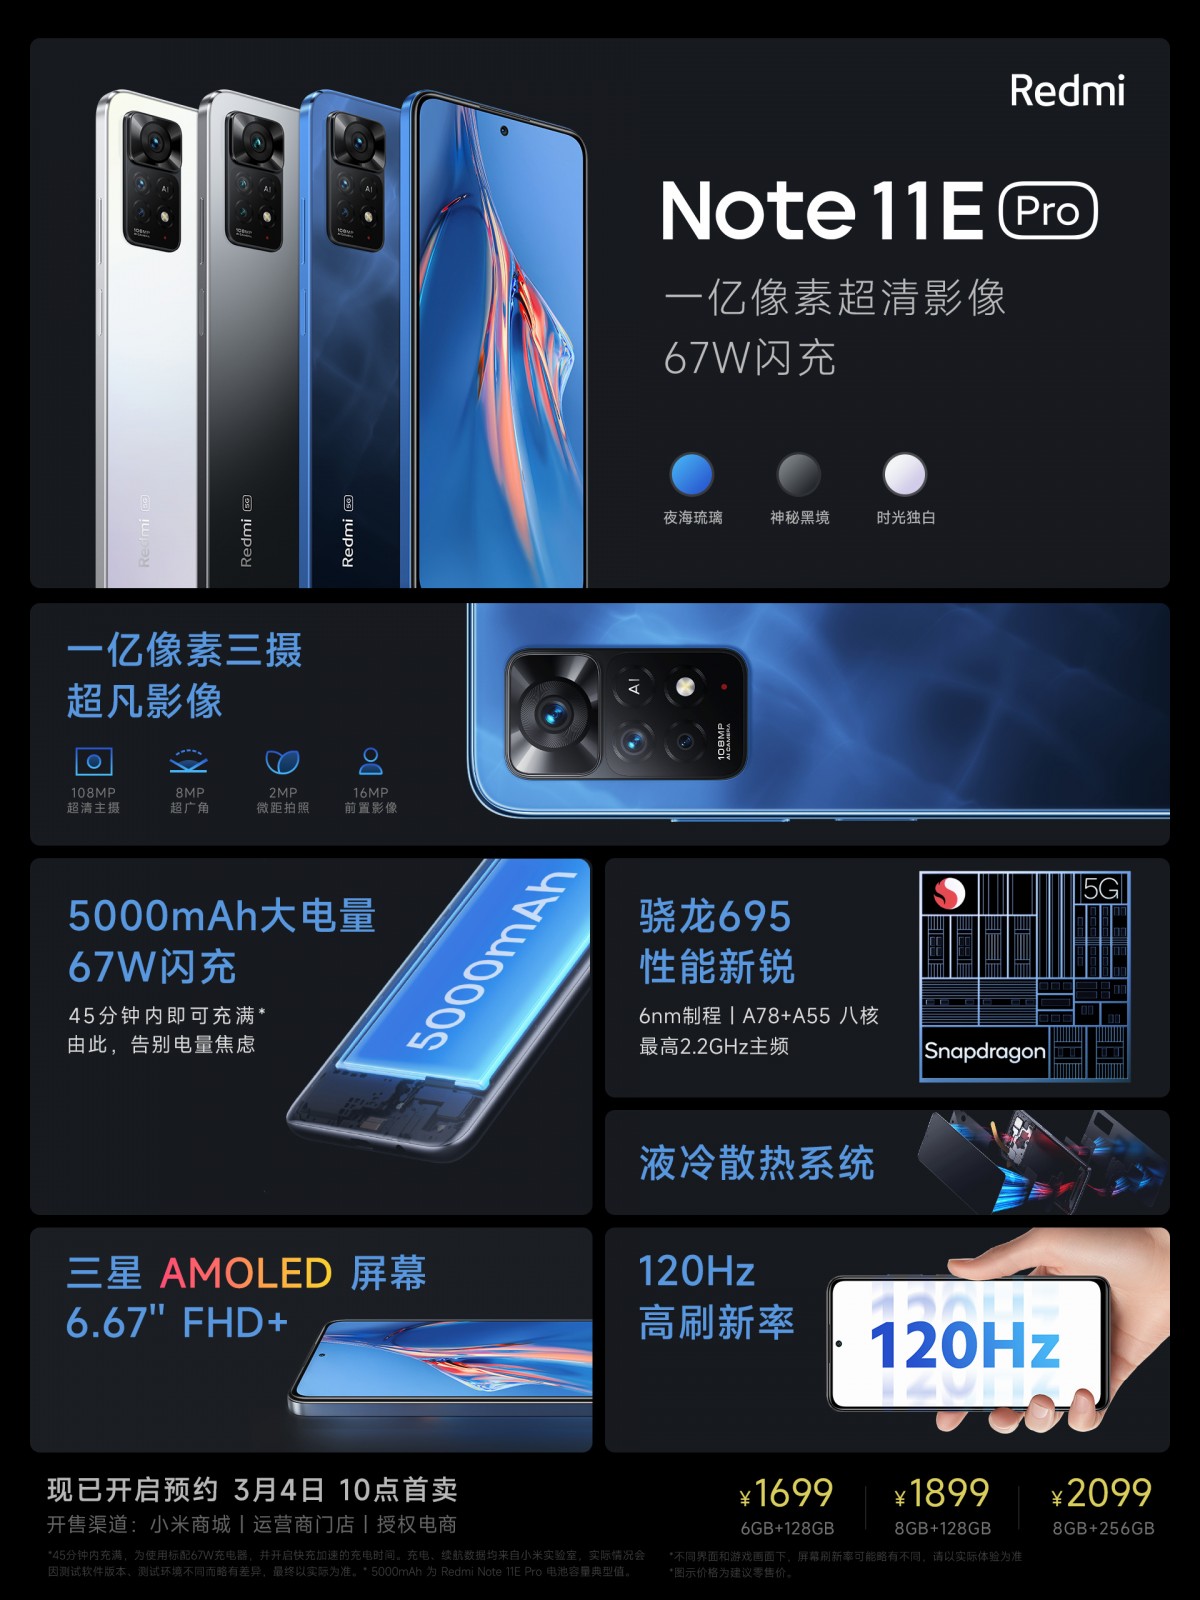 Redmi Note 11E Pro 5G Price